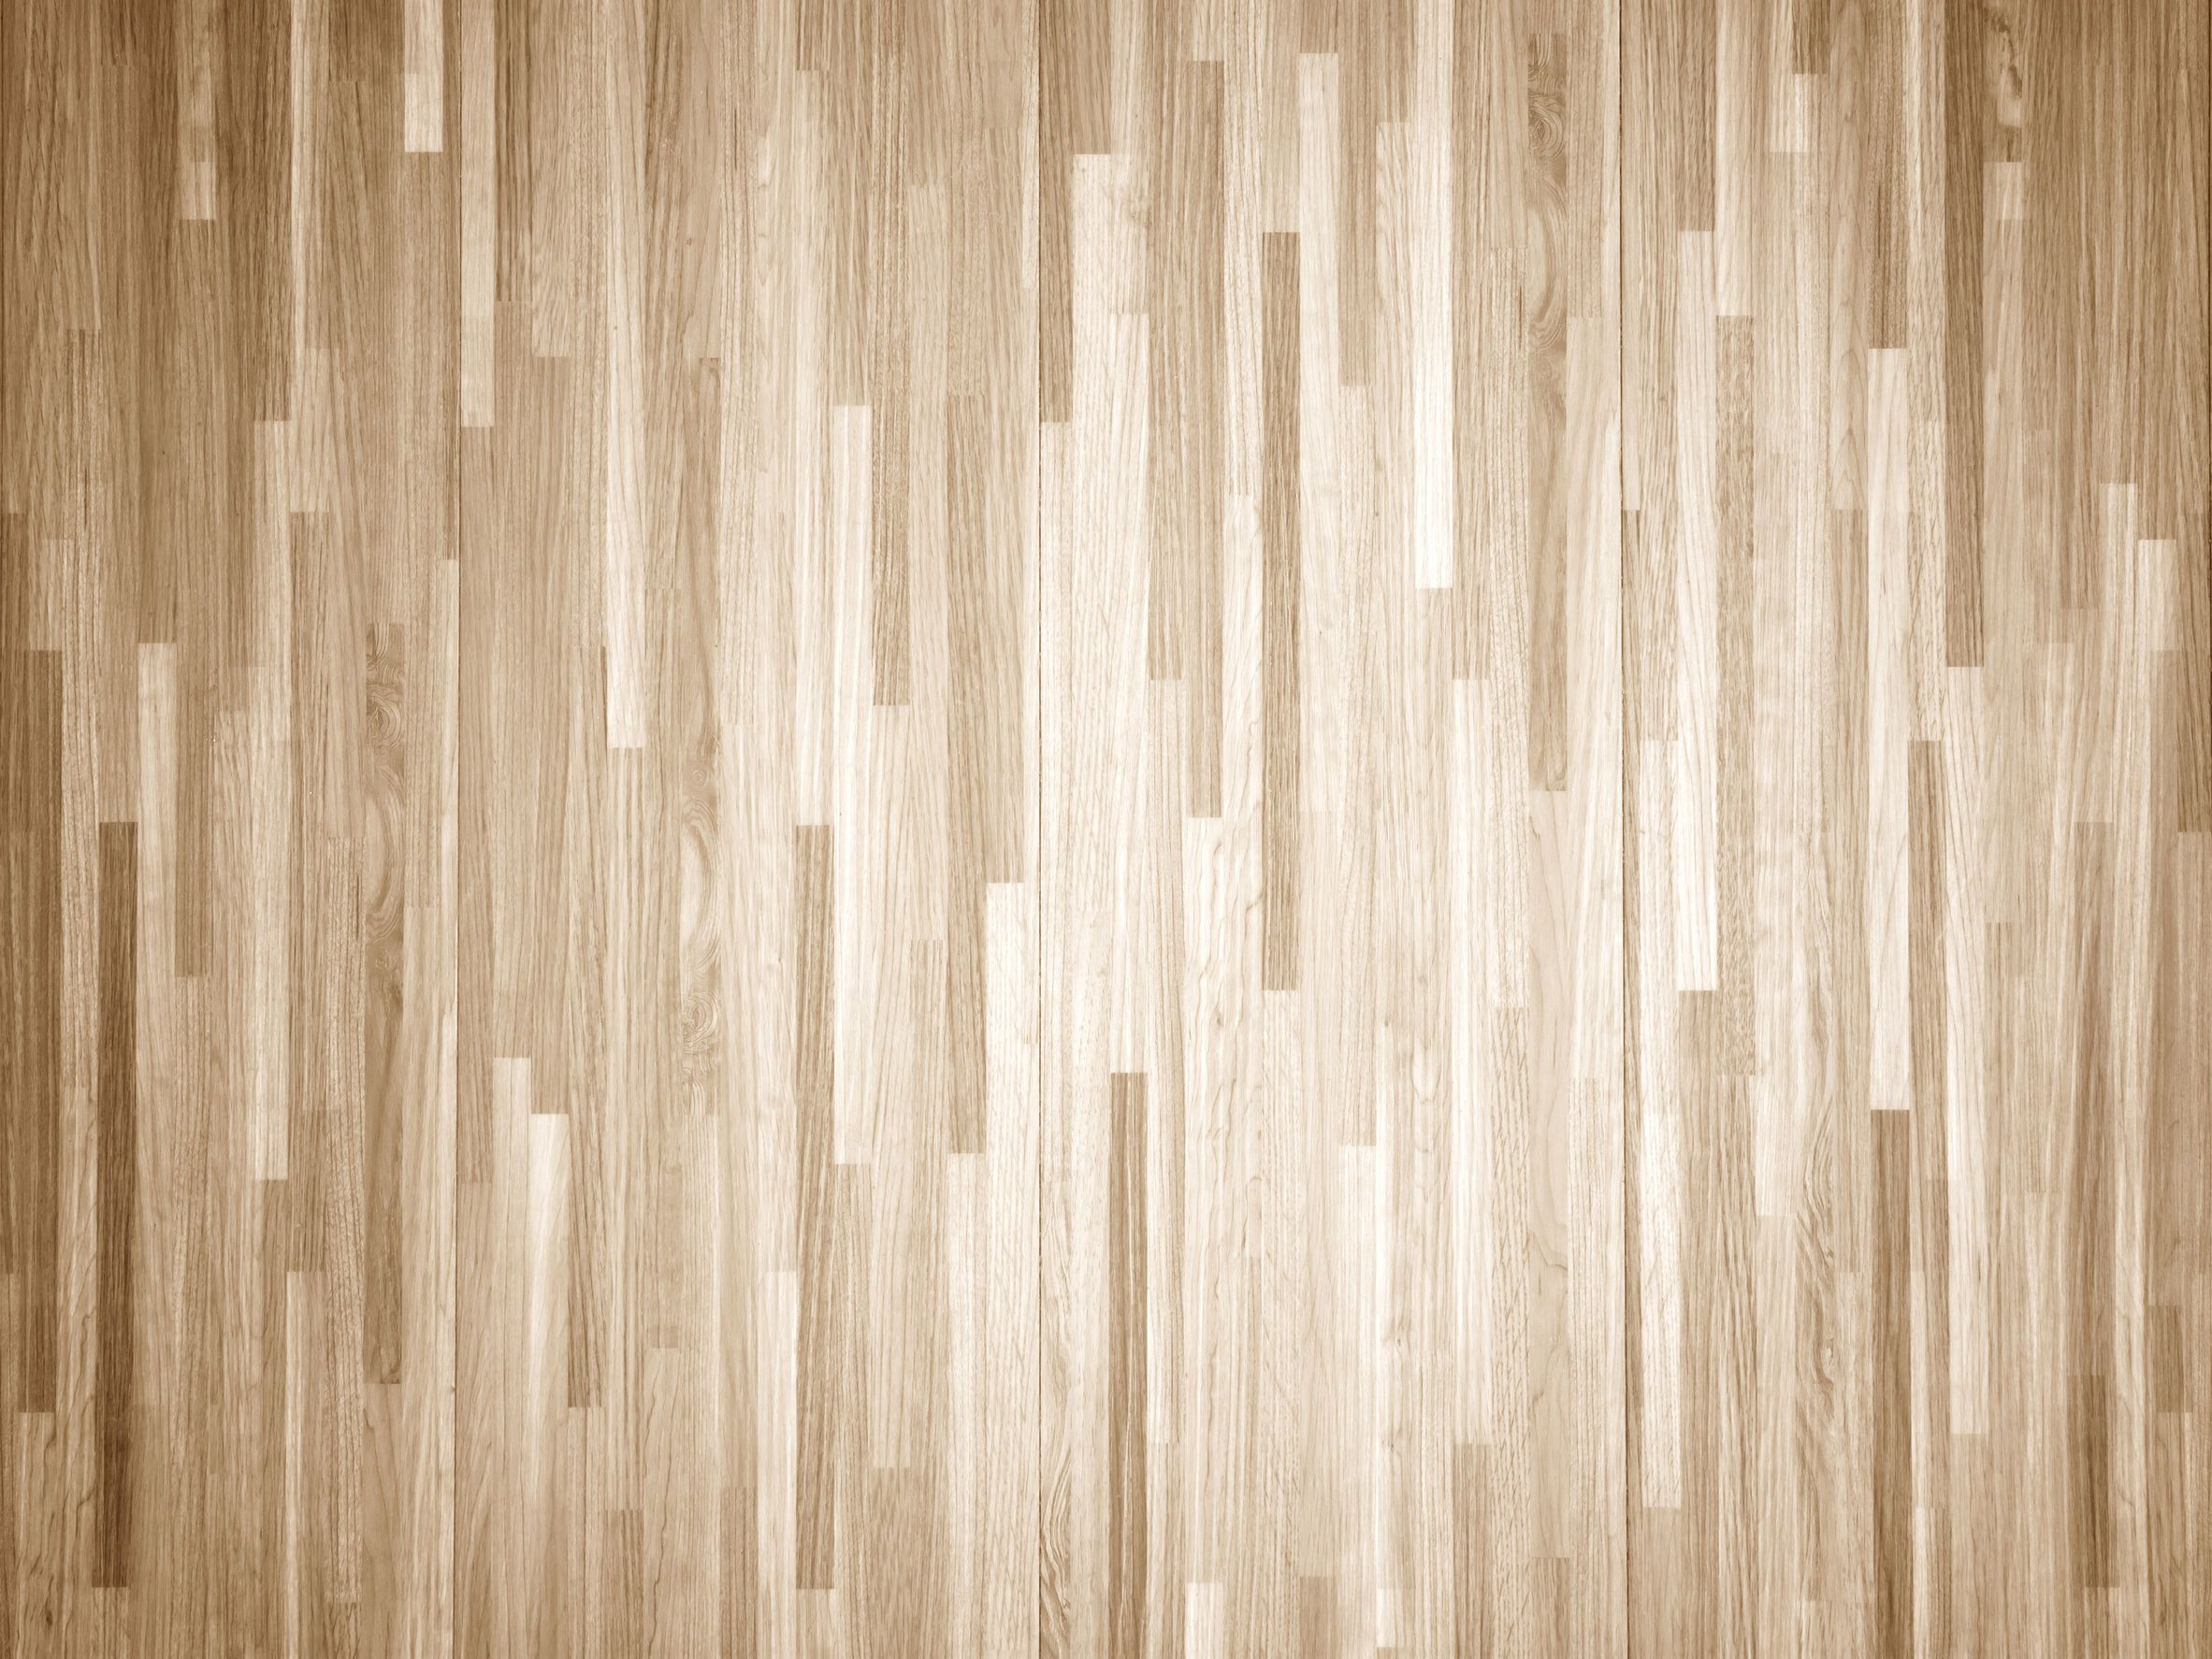 22 Amazing Benefits Of Hardwood Flooring Vs Laminate 2022 free download benefits of hardwood flooring vs laminate of how to chemically strip wood floors woodfloordoctor com in you